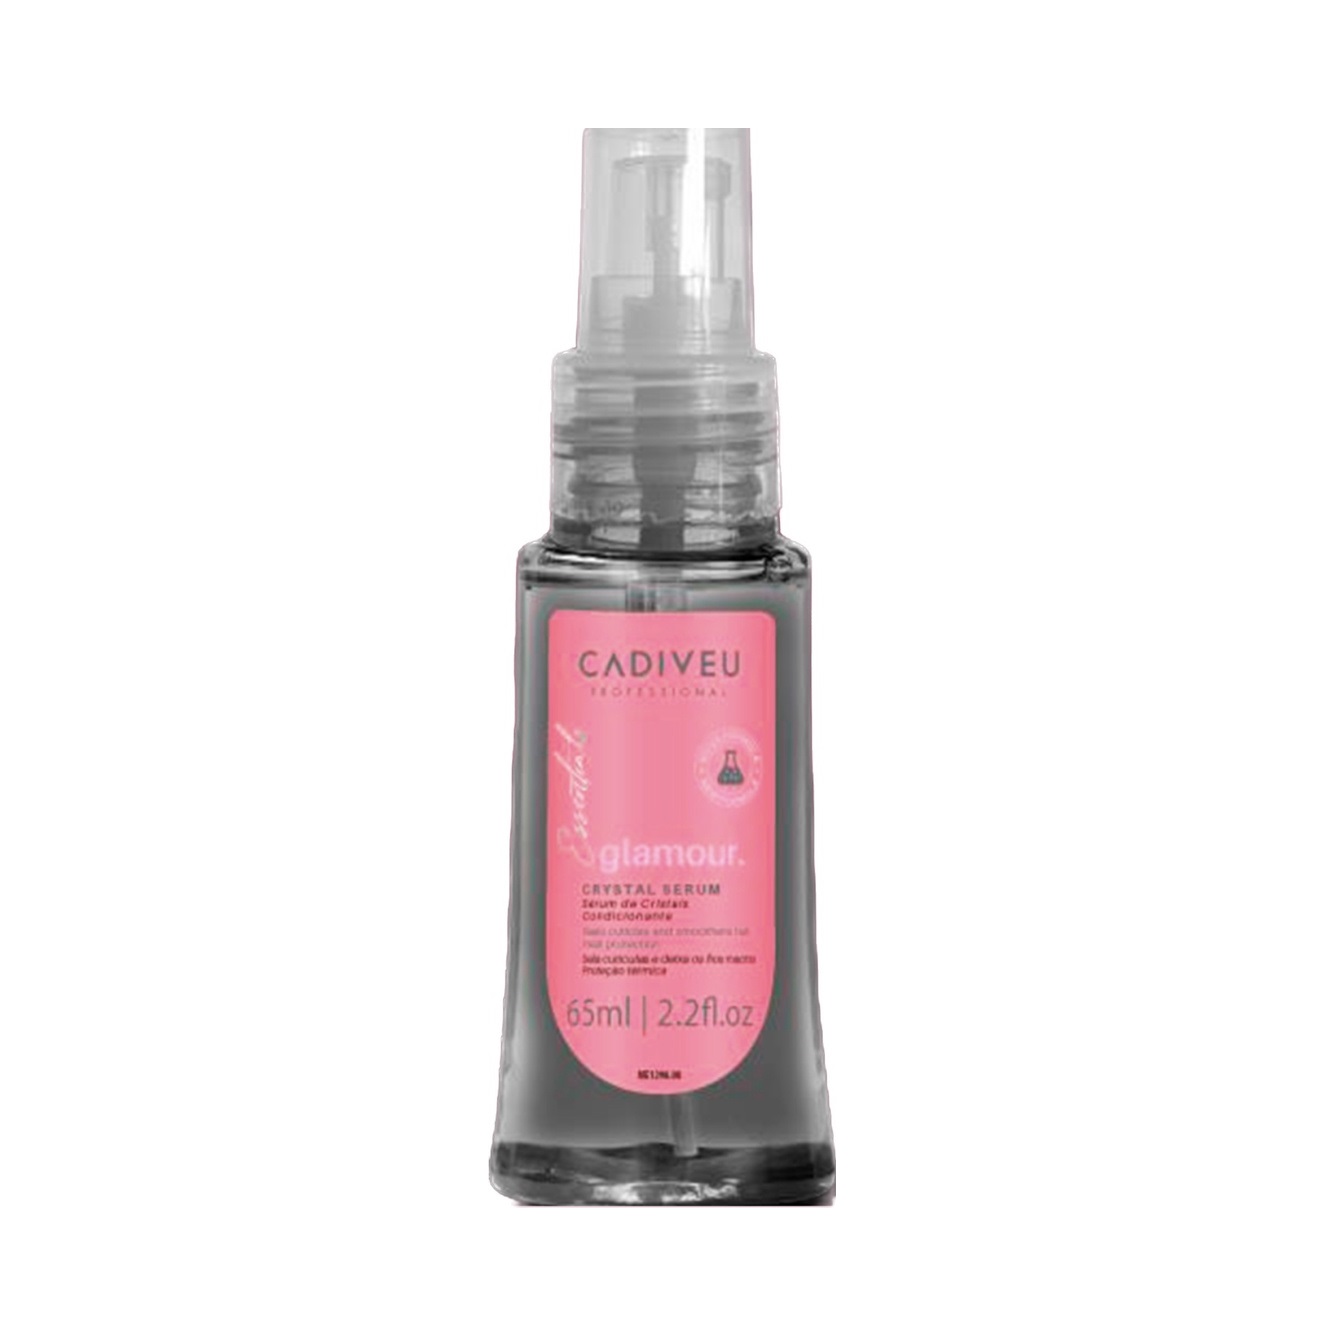 CADIVEU, Кристаллическая сыворотка для волос Essentials Glamour, 65 мл.